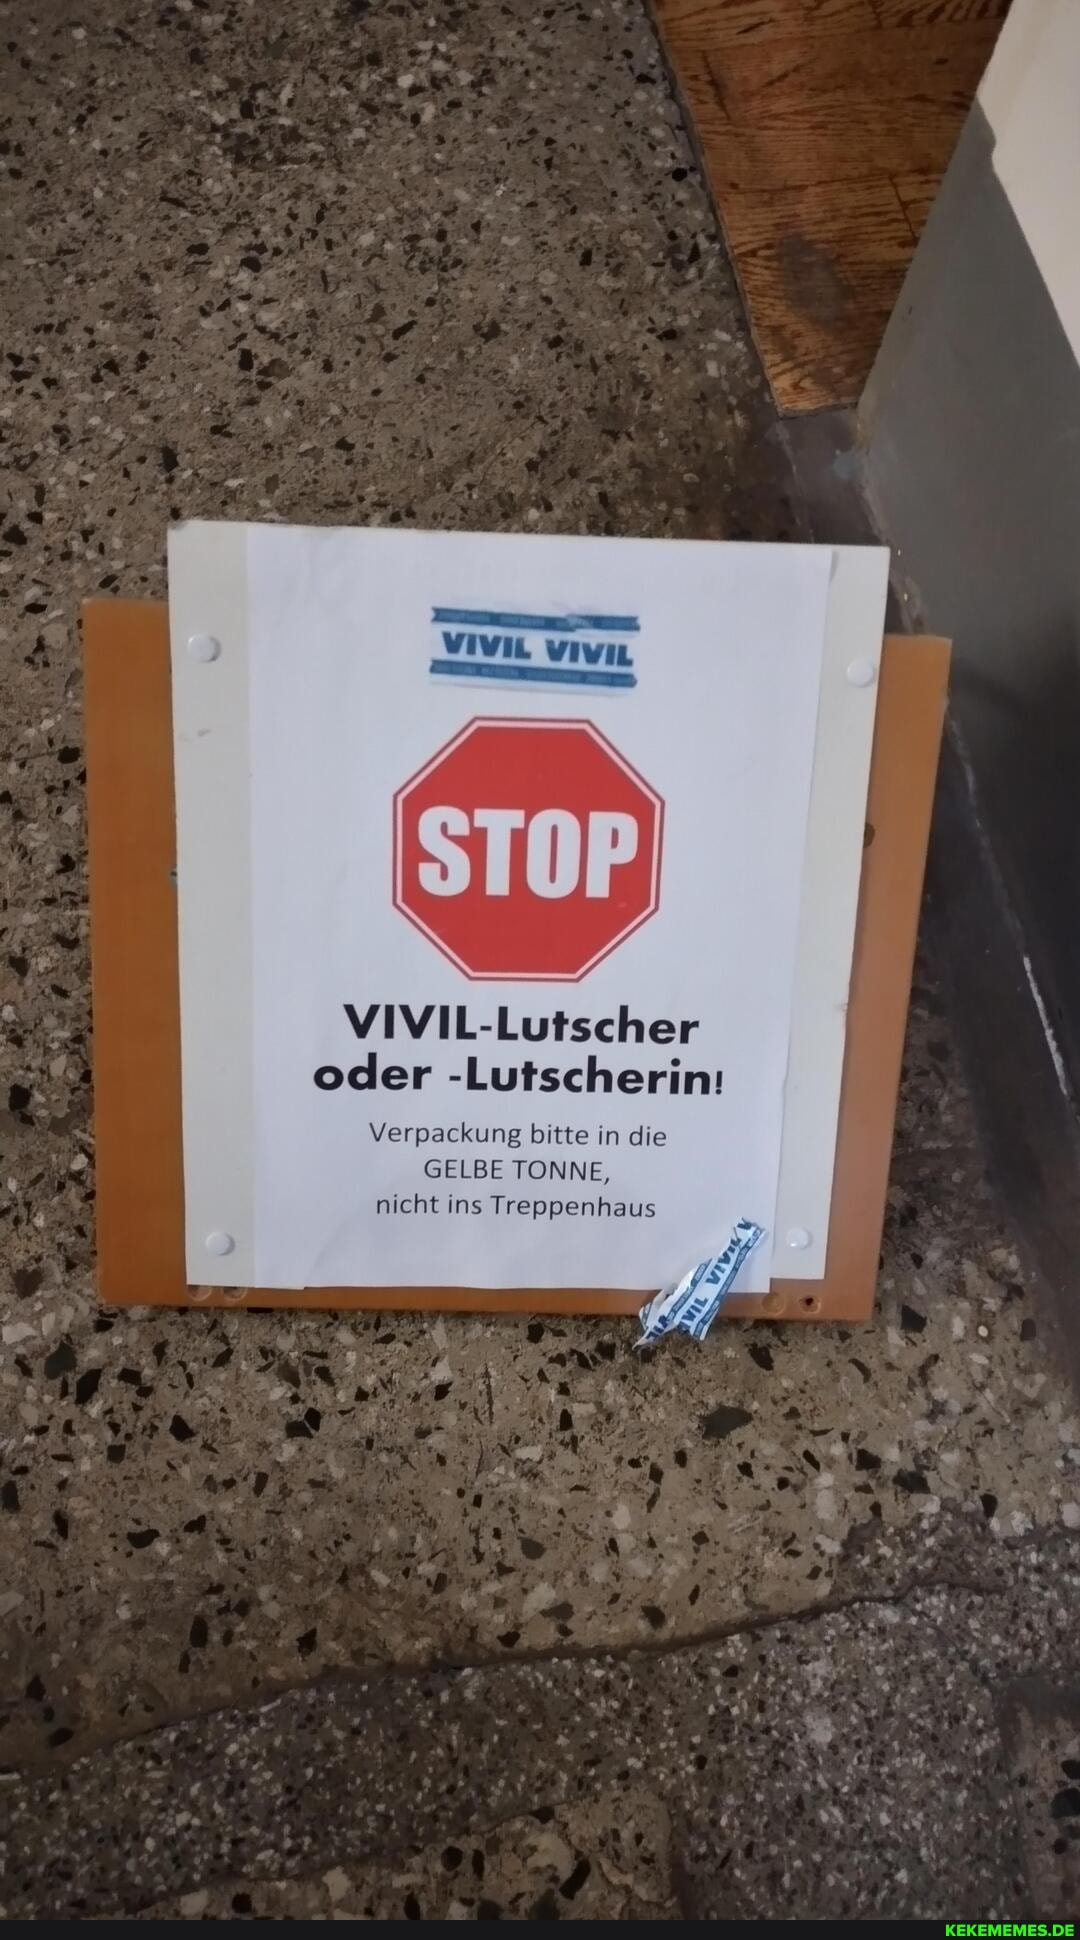 VIVIL-Lutscher oder -Lutscherin: Verpackung bitte in die GELBE TONNE, nicht ins 